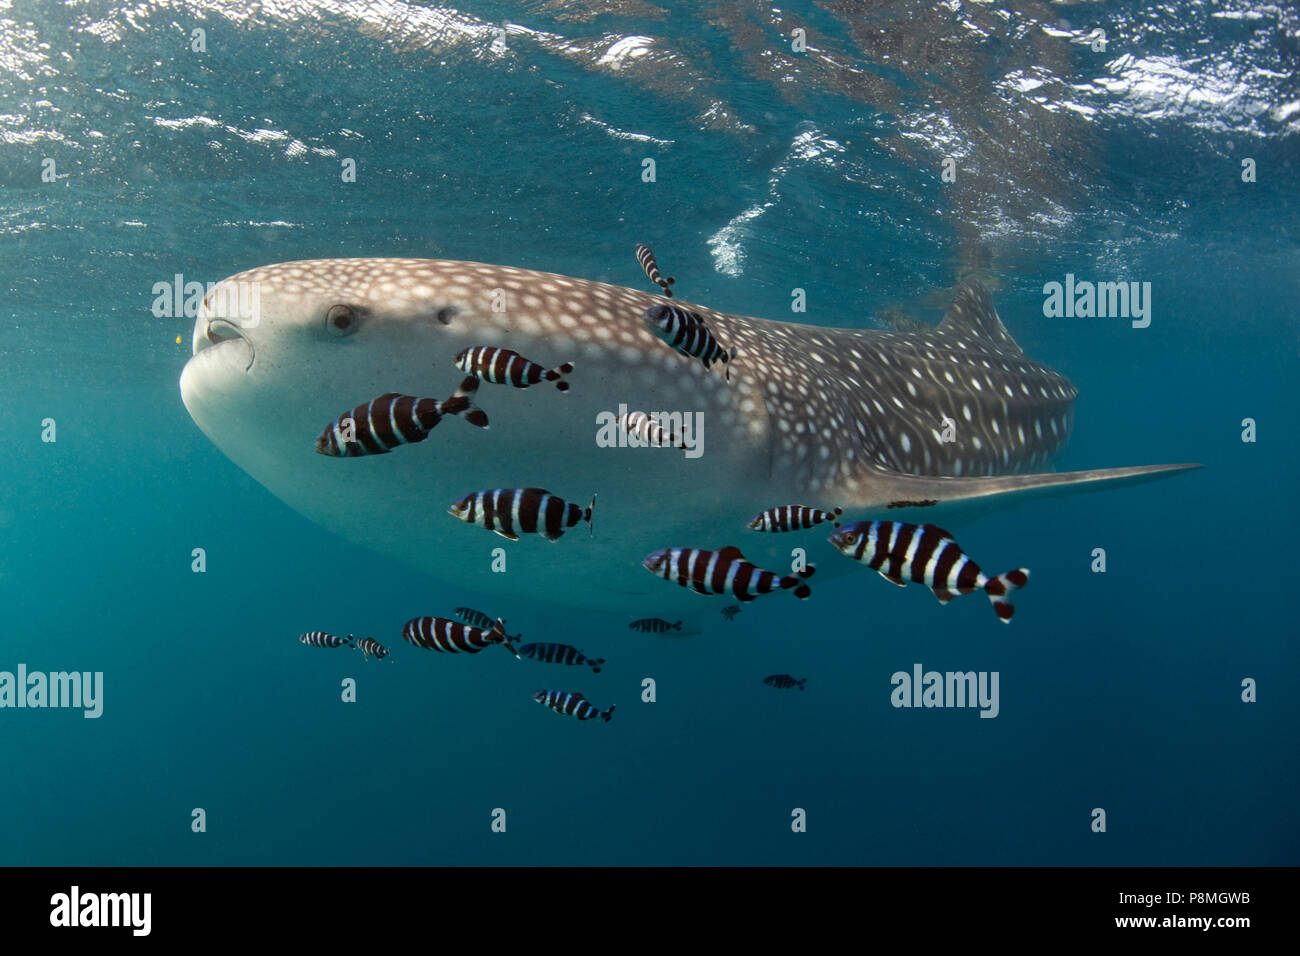 Squalo Balena nuotare vicino tot superficie insieme con un certo numero di piccole bianco e nero a strisce pesci. Gli squali balena sono una specie in via di estinzione Foto Stock